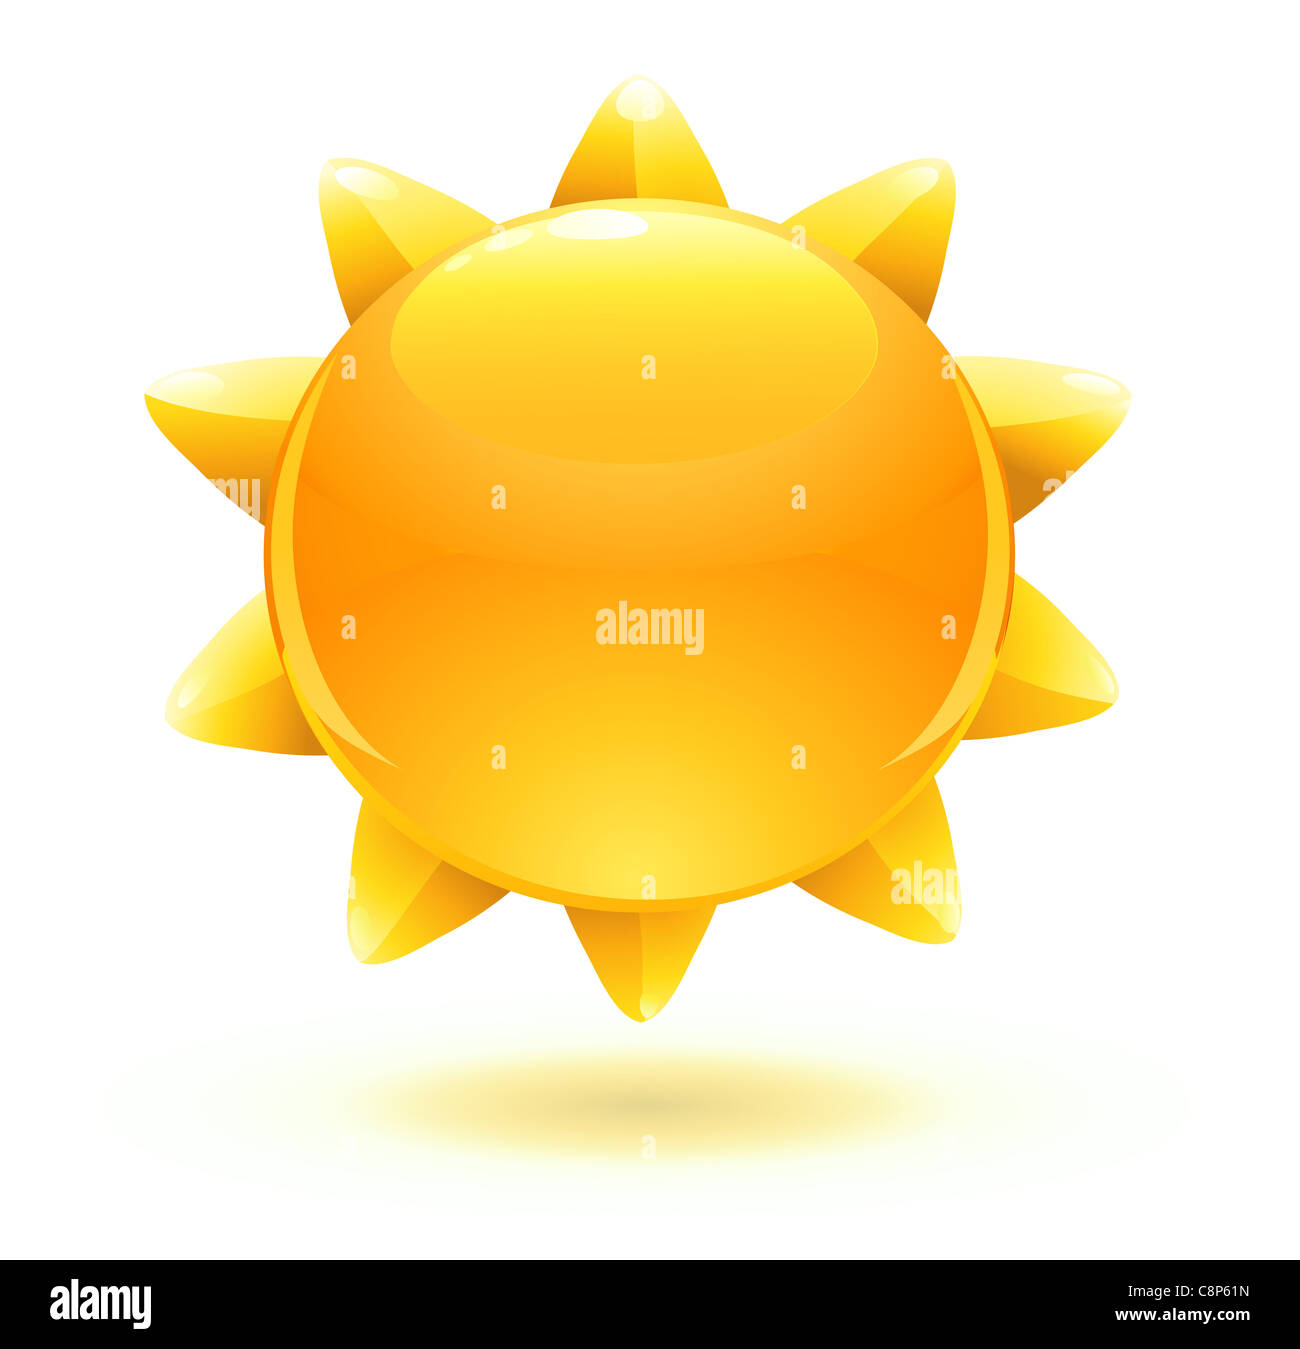 Sun cartoon hi-res stock photography and images - Alamy